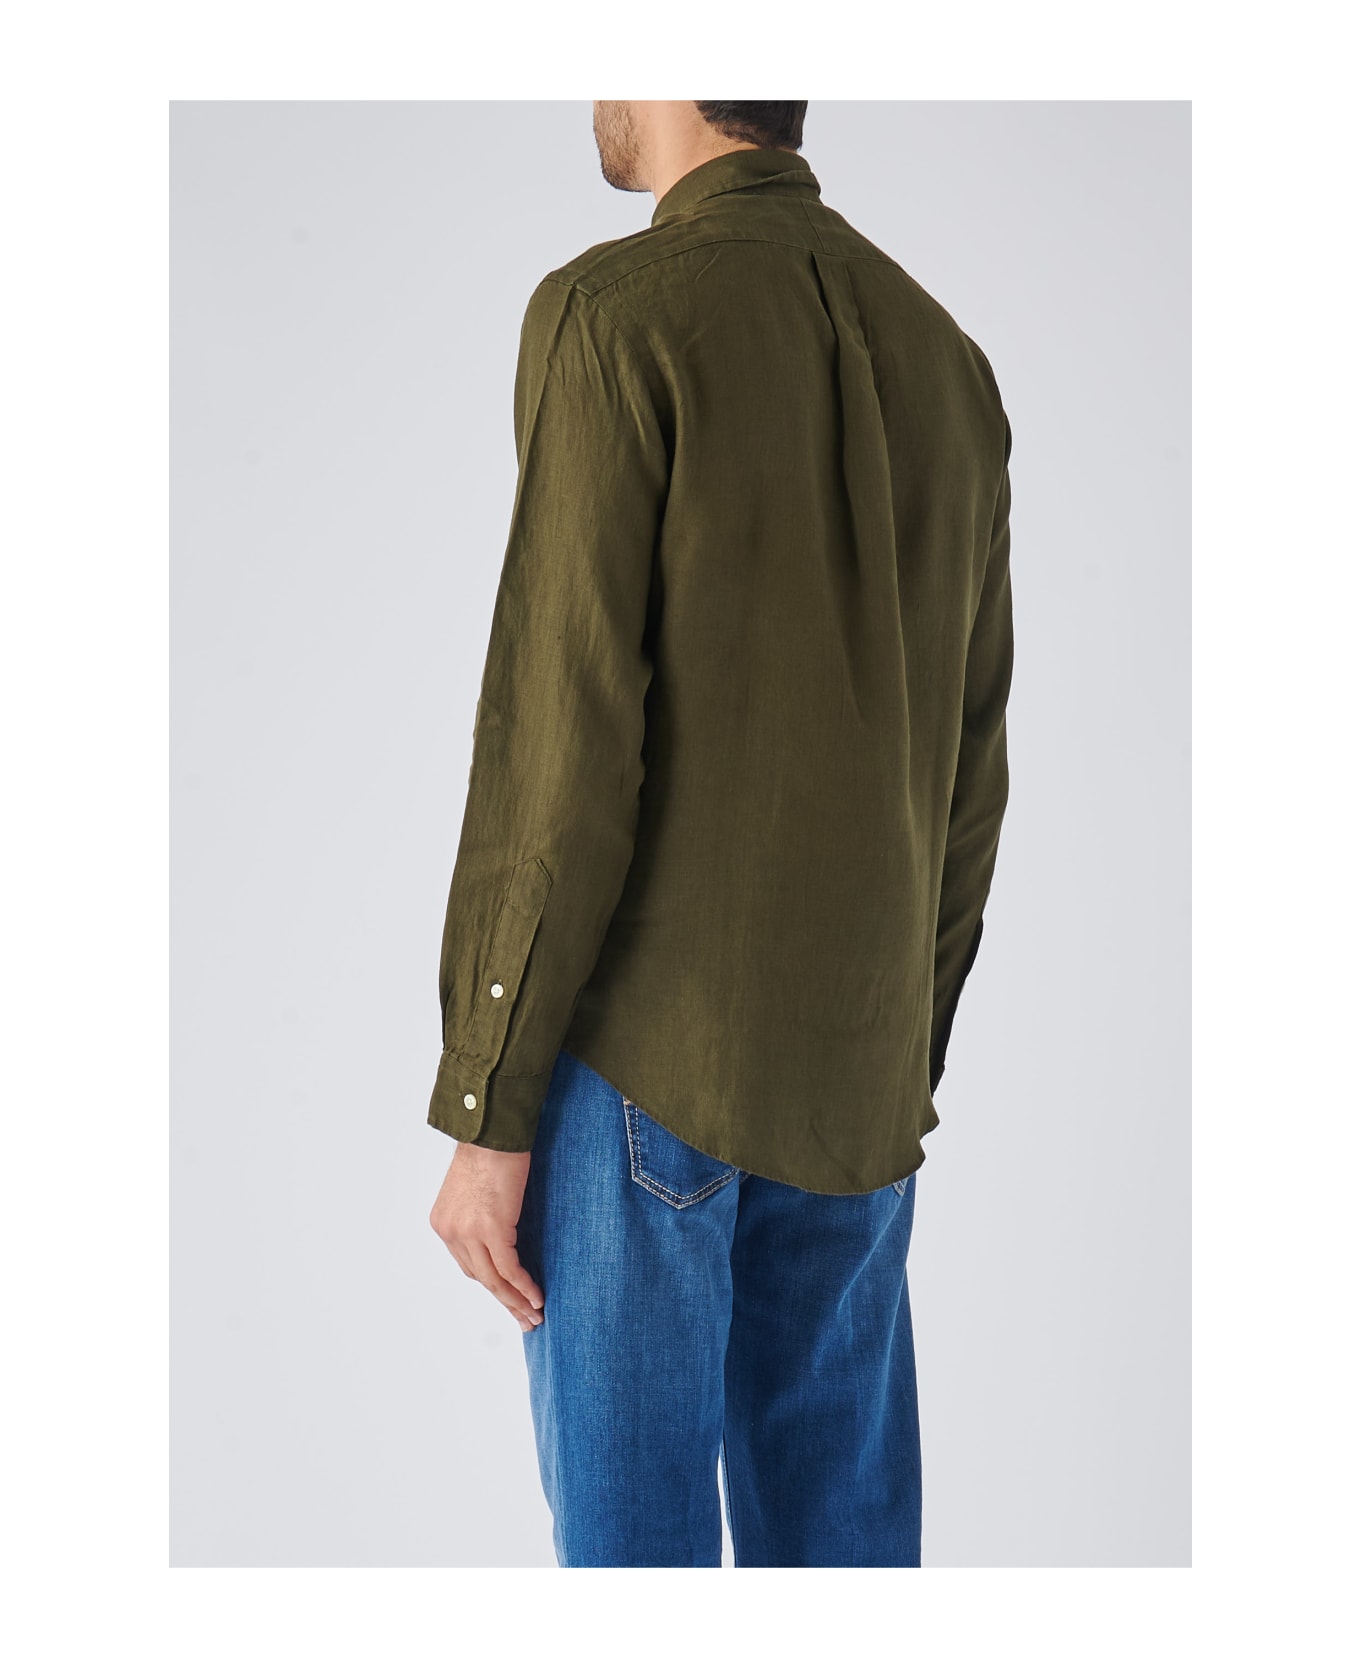 Ralph Lauren Long Sleeve Sport Shirt Shirt - Green シャツ